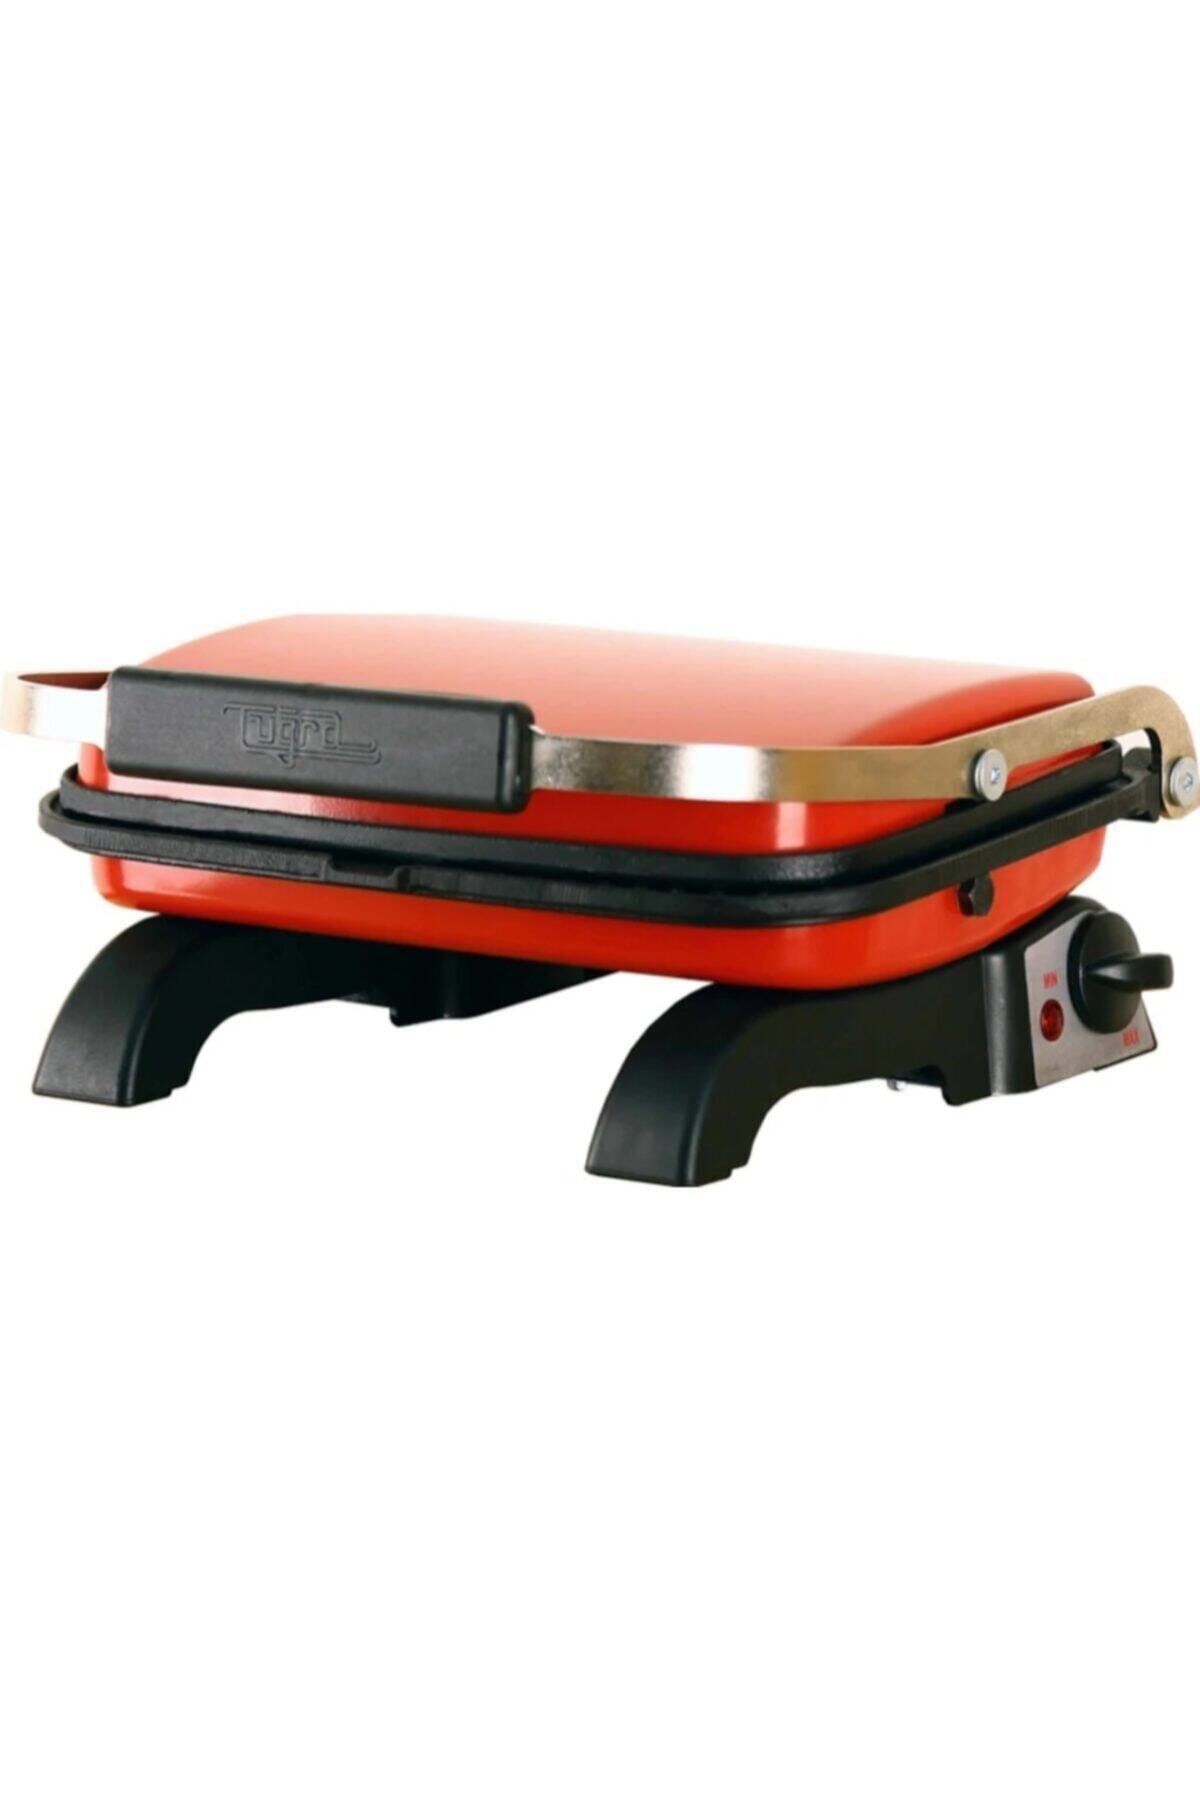 Tuğra Döküm Ev Tipi 8 Dilim Tost Makinası Kırmızı Renk-yanmaz Yapışmaz (30x22 Ölçülerindedir)